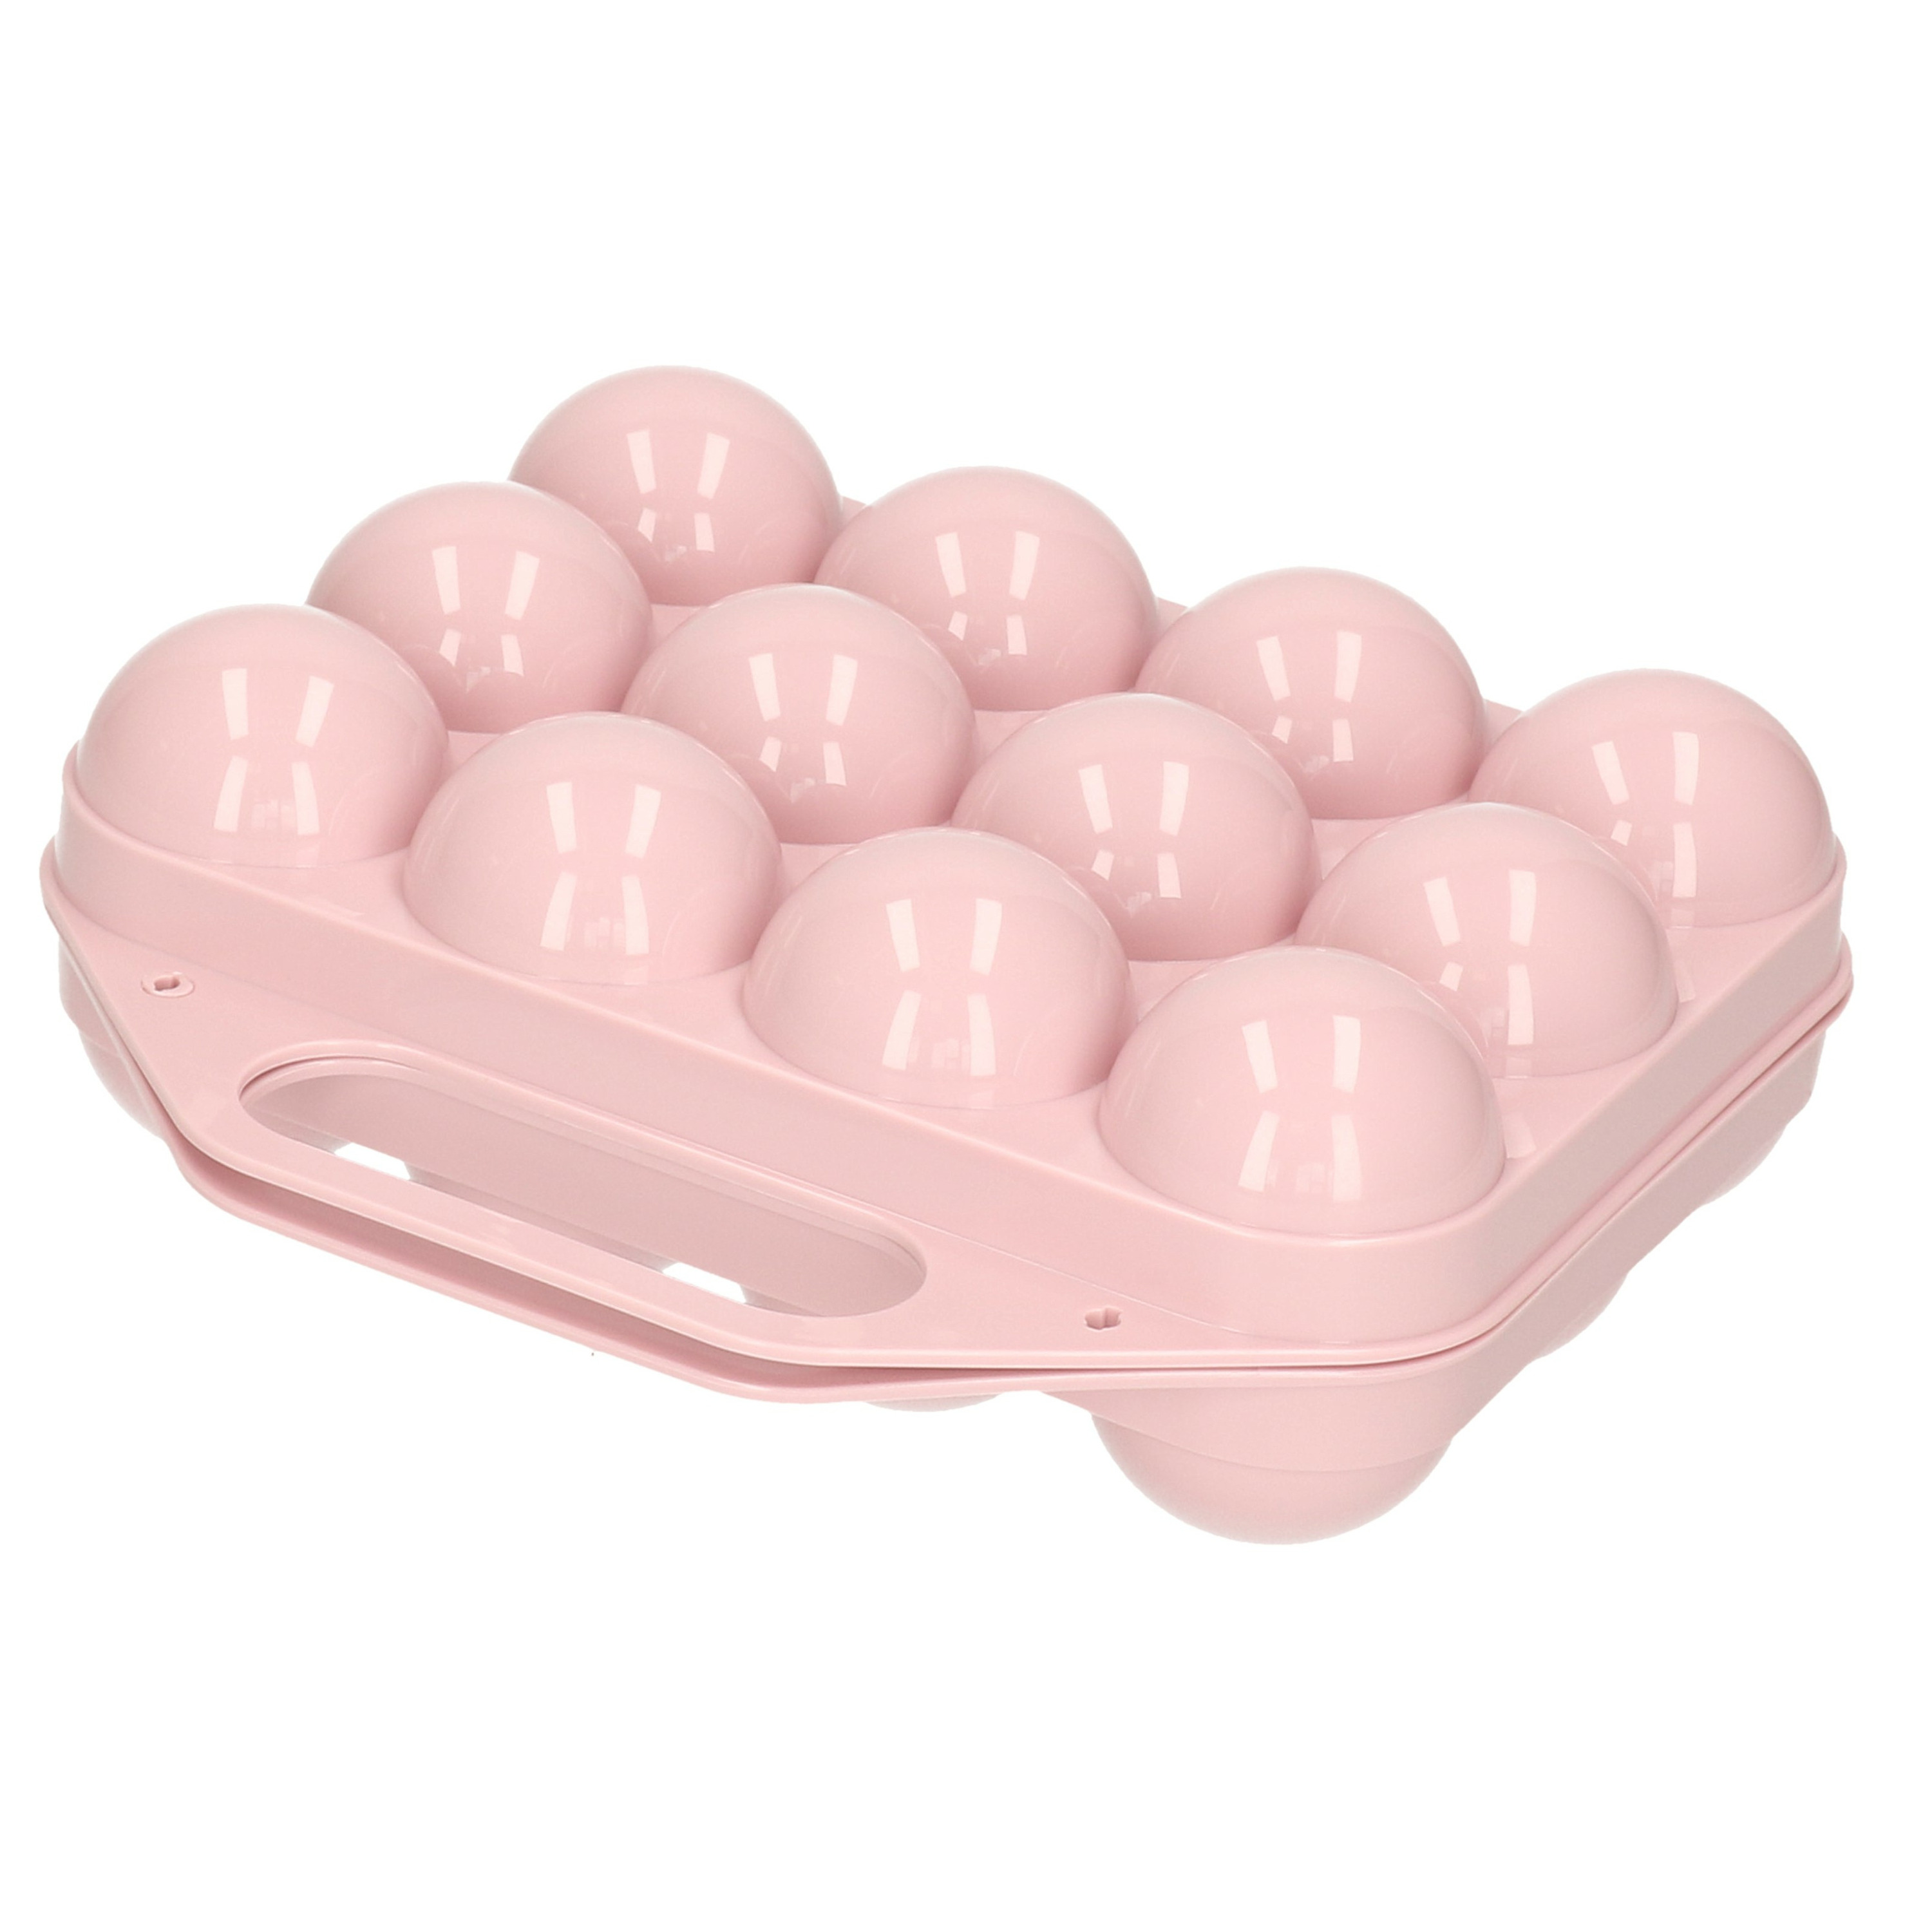 Eierdoos koelkast organizer eierhouder 12 eieren licht roze kunststof 20 x 19 cm